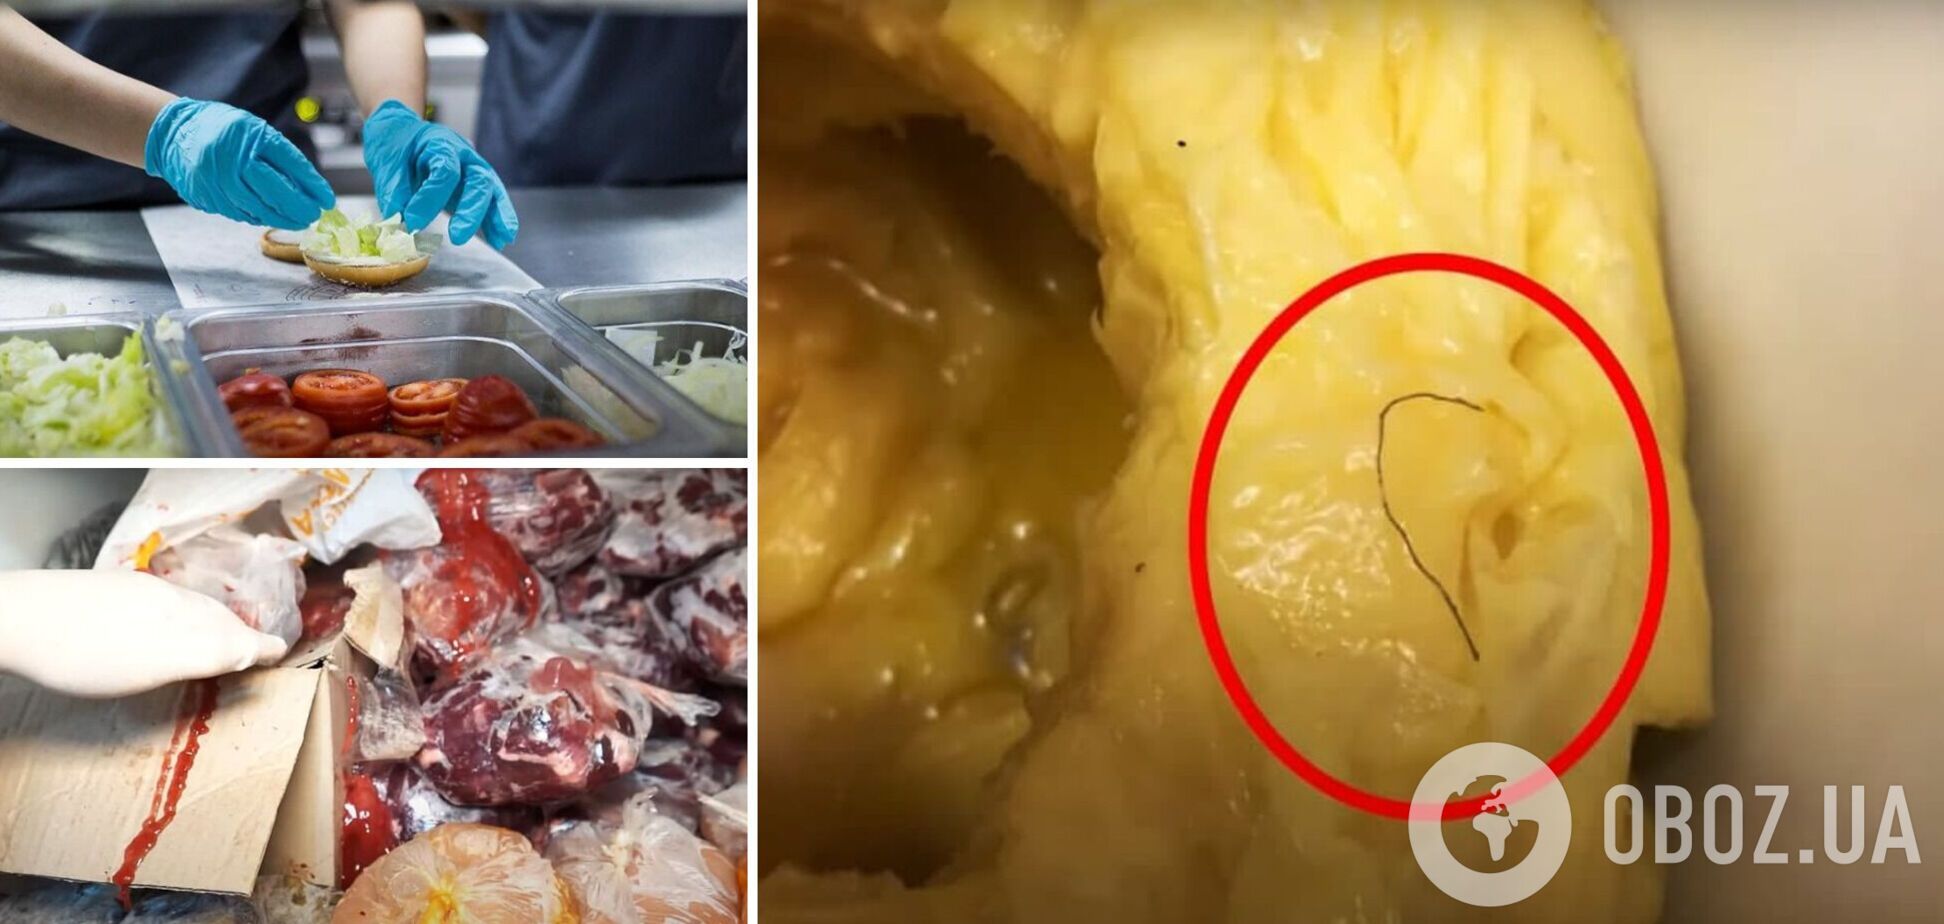 В киевском ресторане эксперты нашли волосы в жире и кровь на хлебе